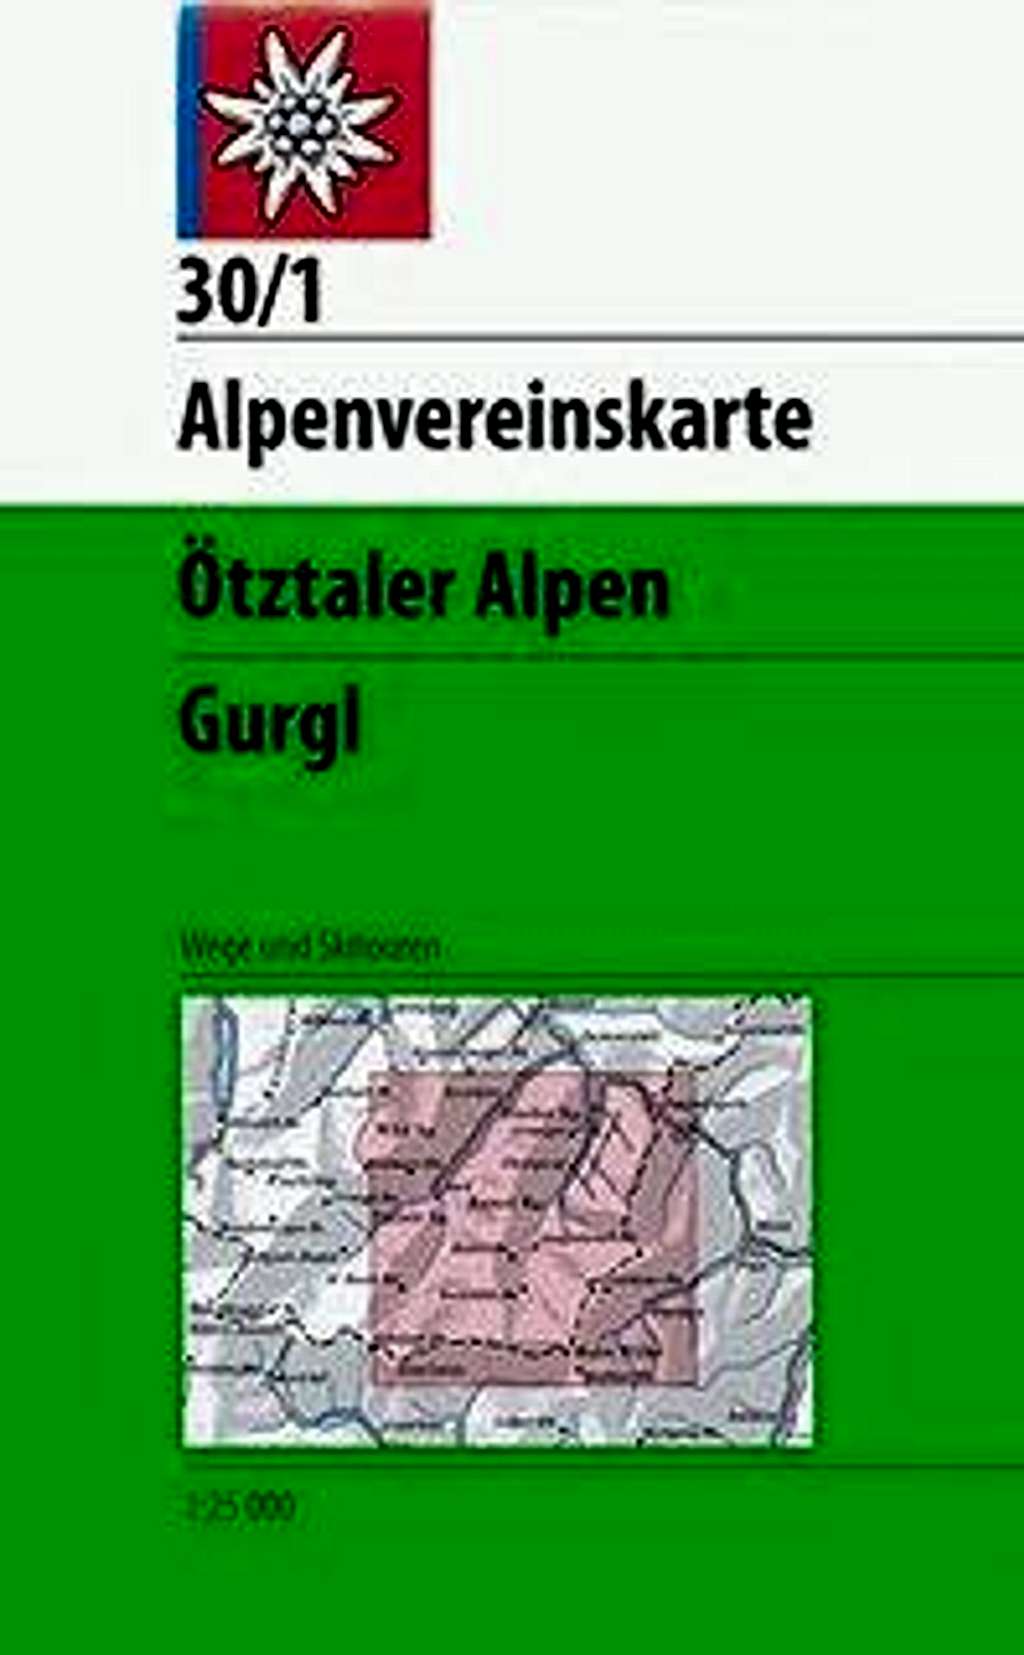 Alpenvereinskarte 30/1 Otztaler Alpen: Gurgl